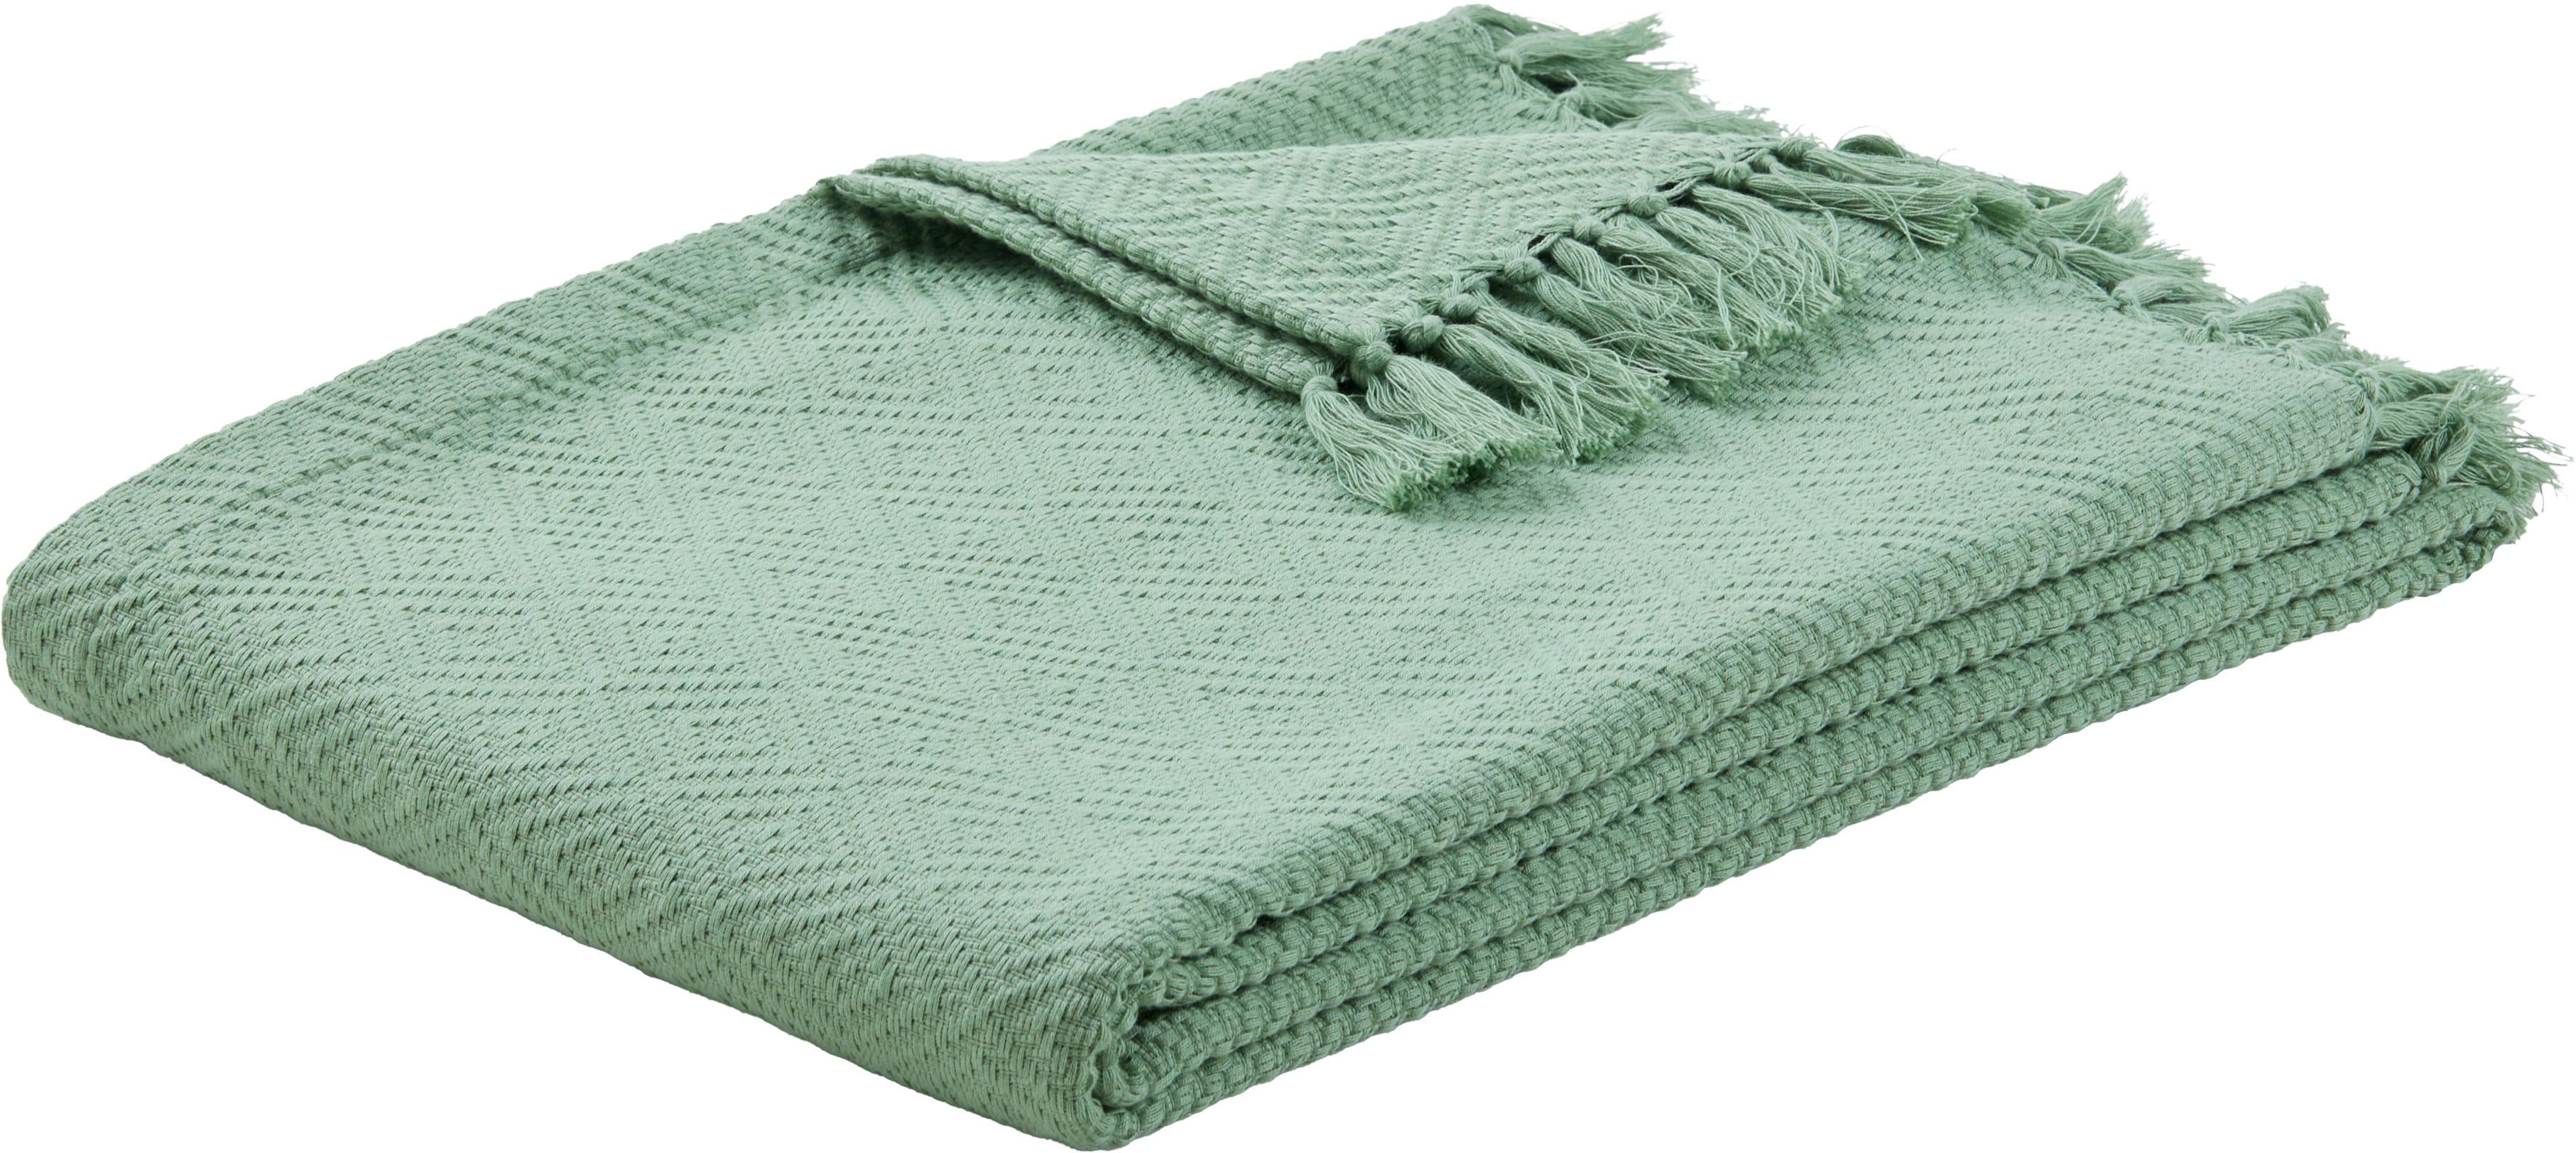 Denná Prikrývka Frieda, 130/180cm, Zelená - zelená, Štýlový, textil (130/180cm) - Modern Living